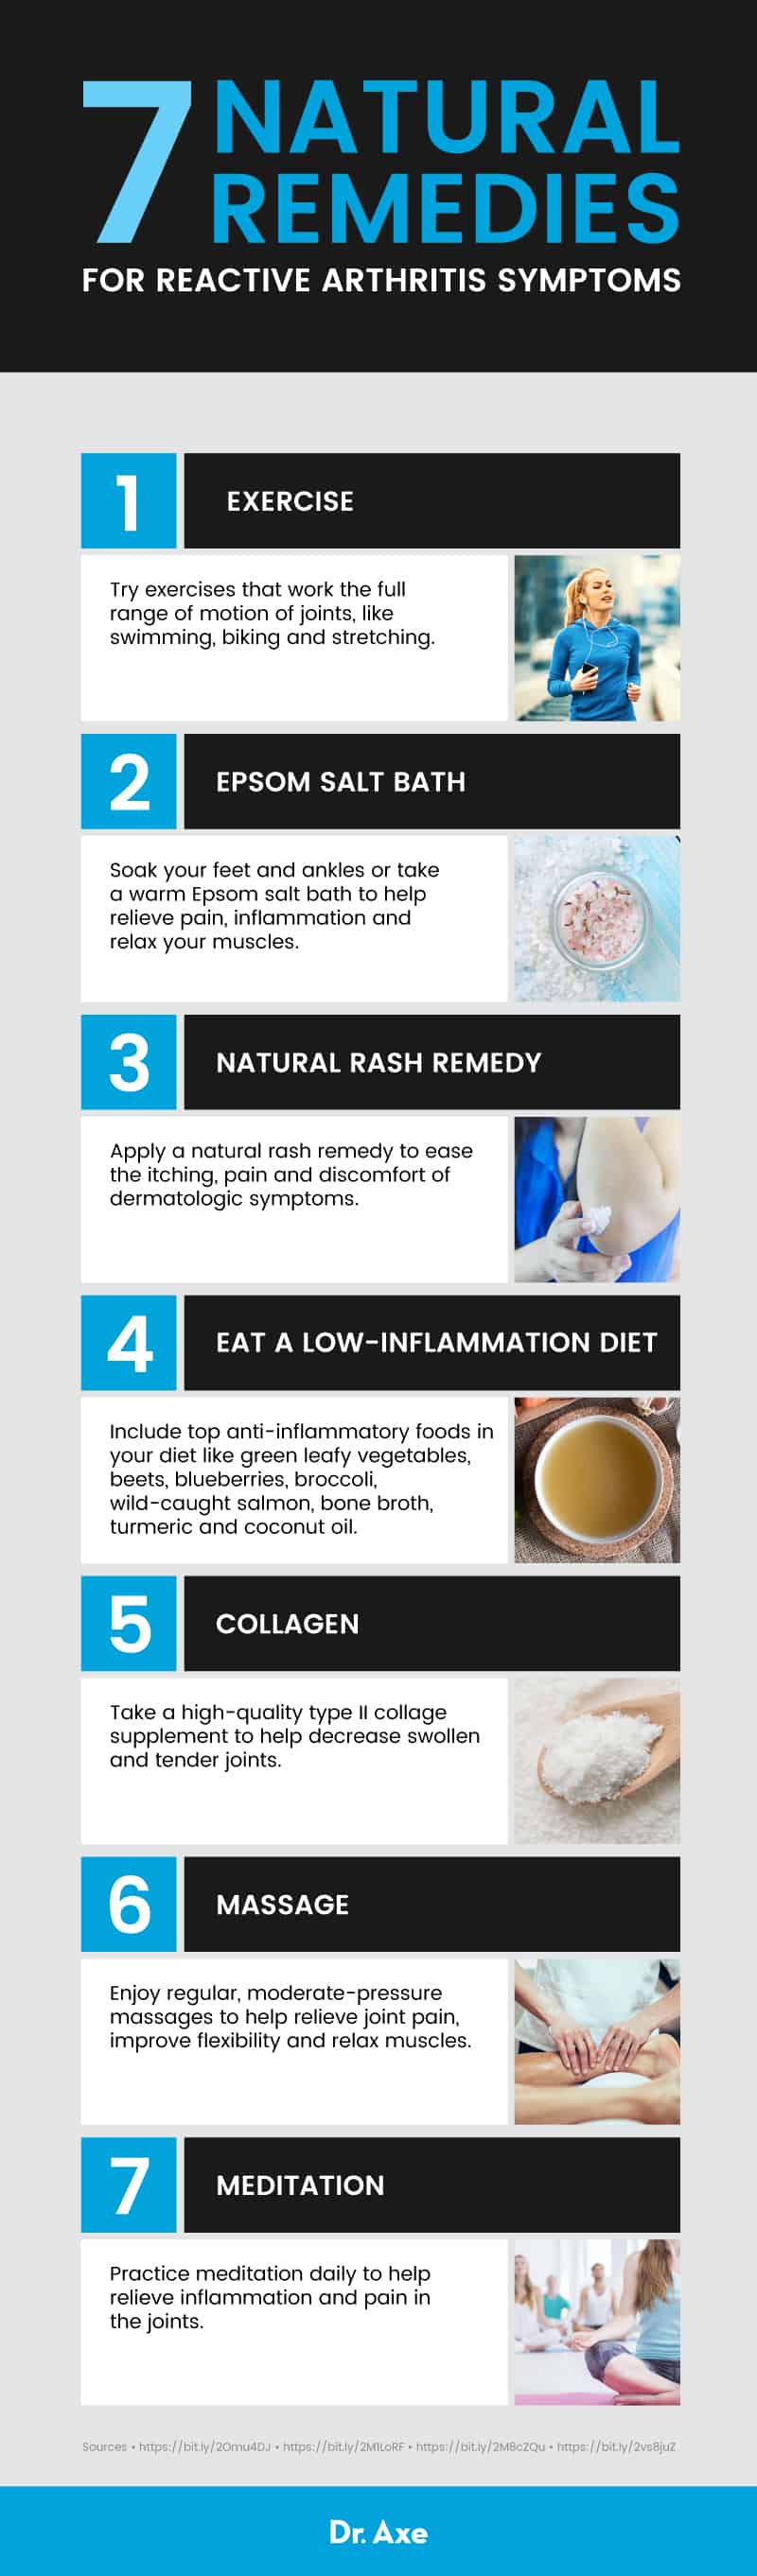 7治疗反应性关节炎症状的天然药物